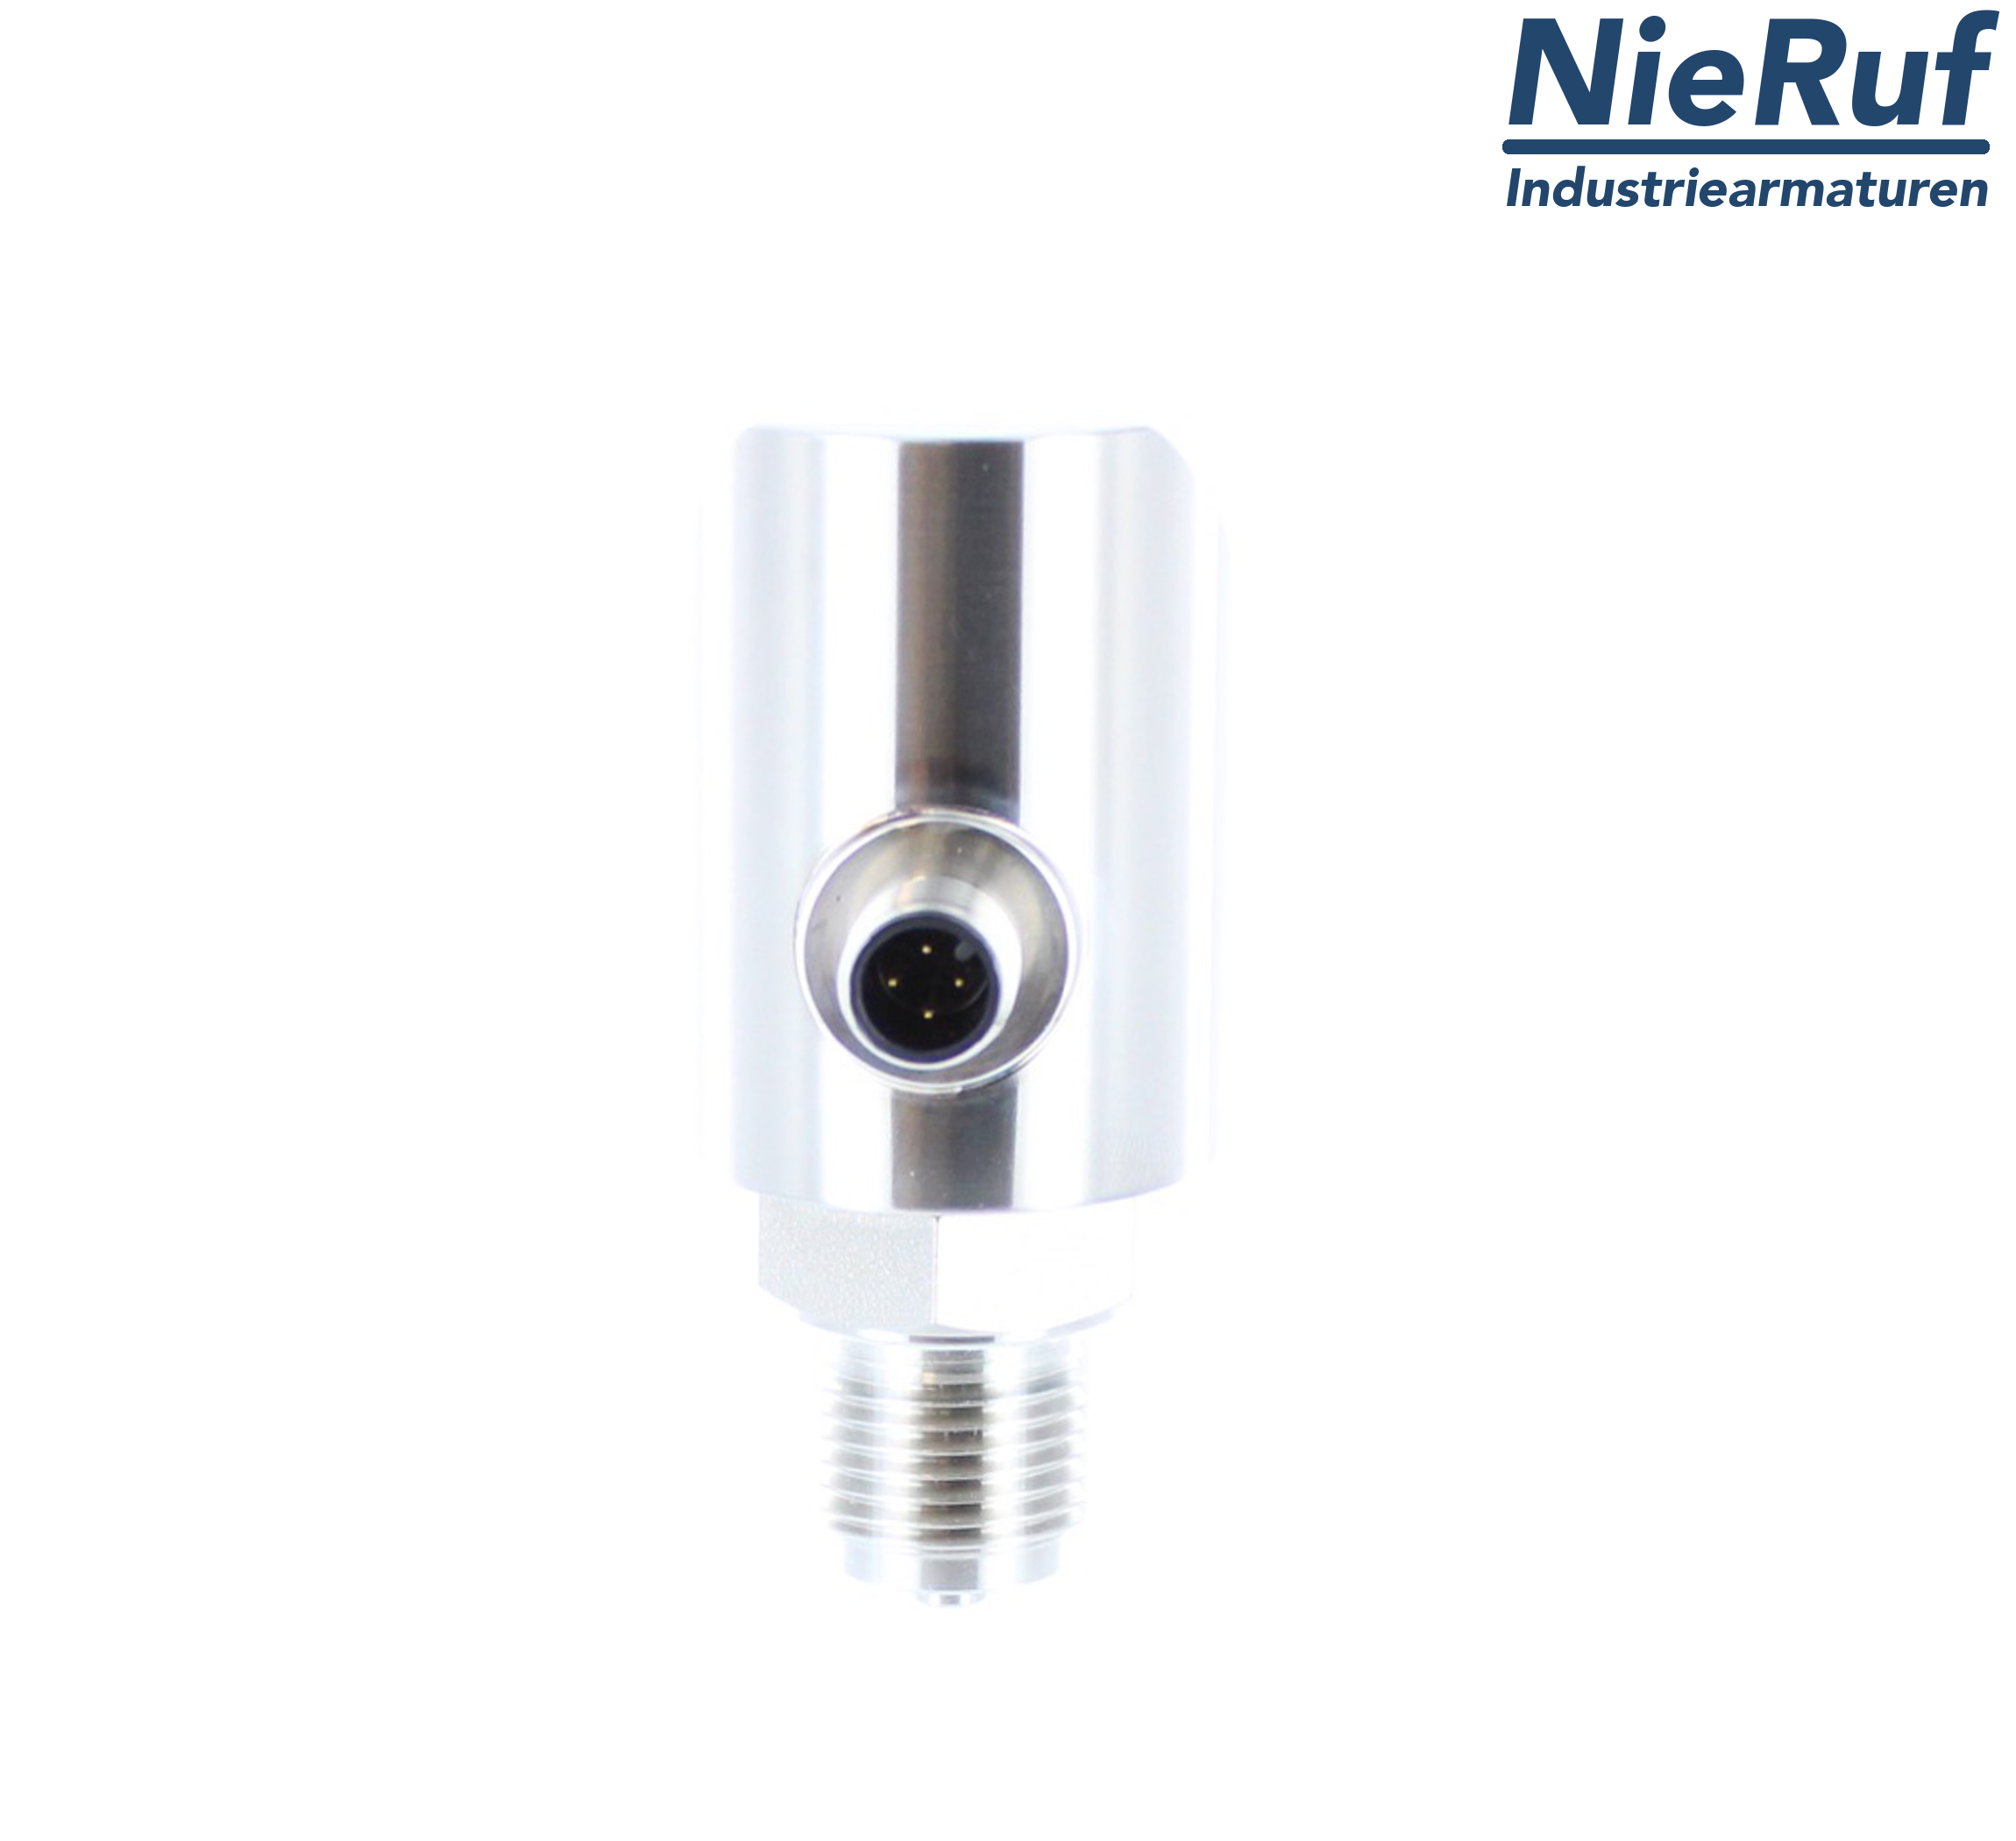 digital pressure sensor G 1/2" B IB 4-wire: 1xPNP, 1x4 - 20mA, Desina FPM 0,0 - 100,0 bar